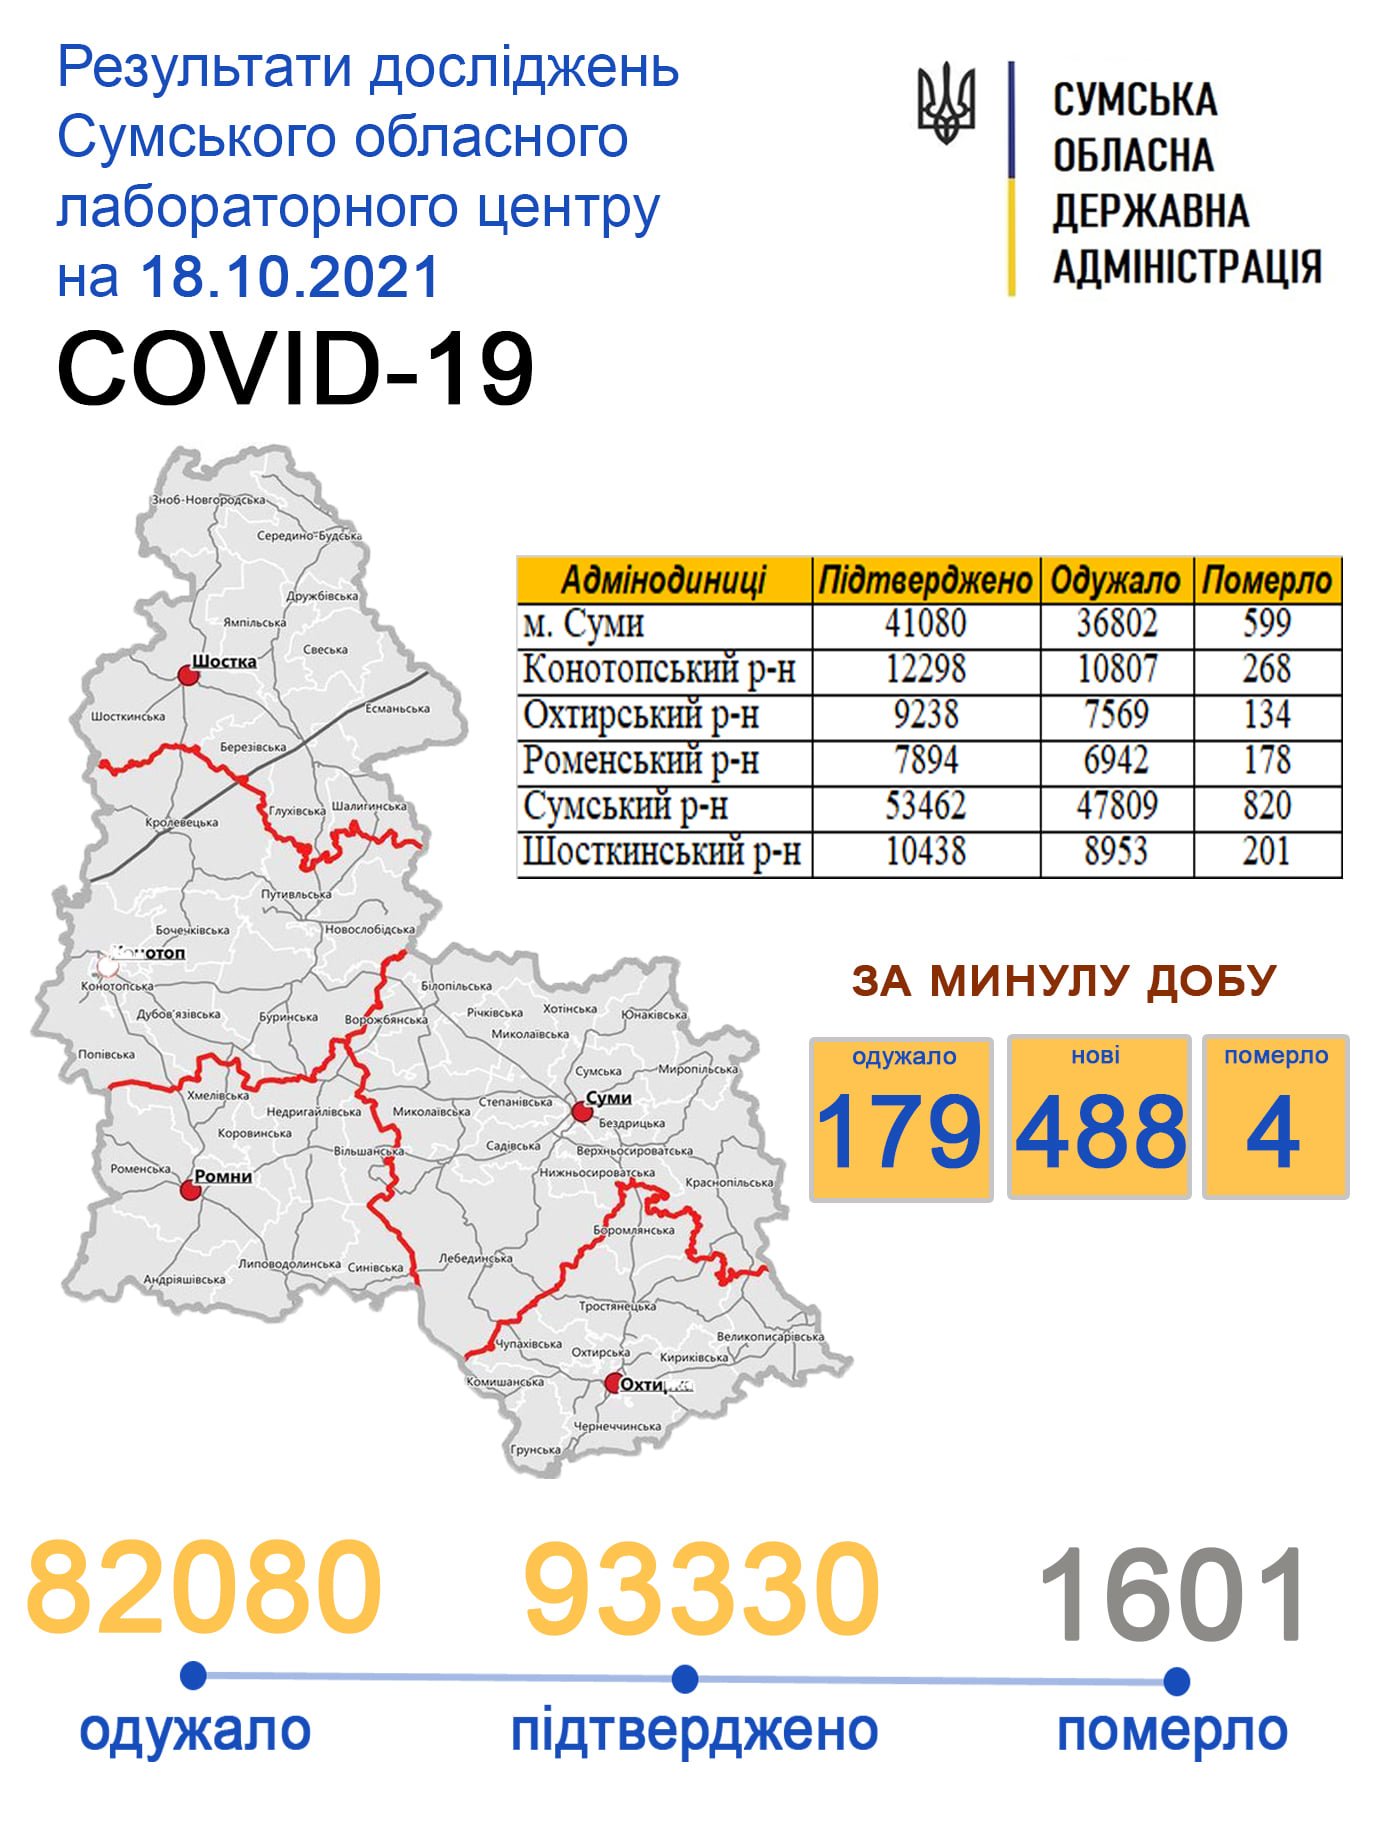    covid-19  488   